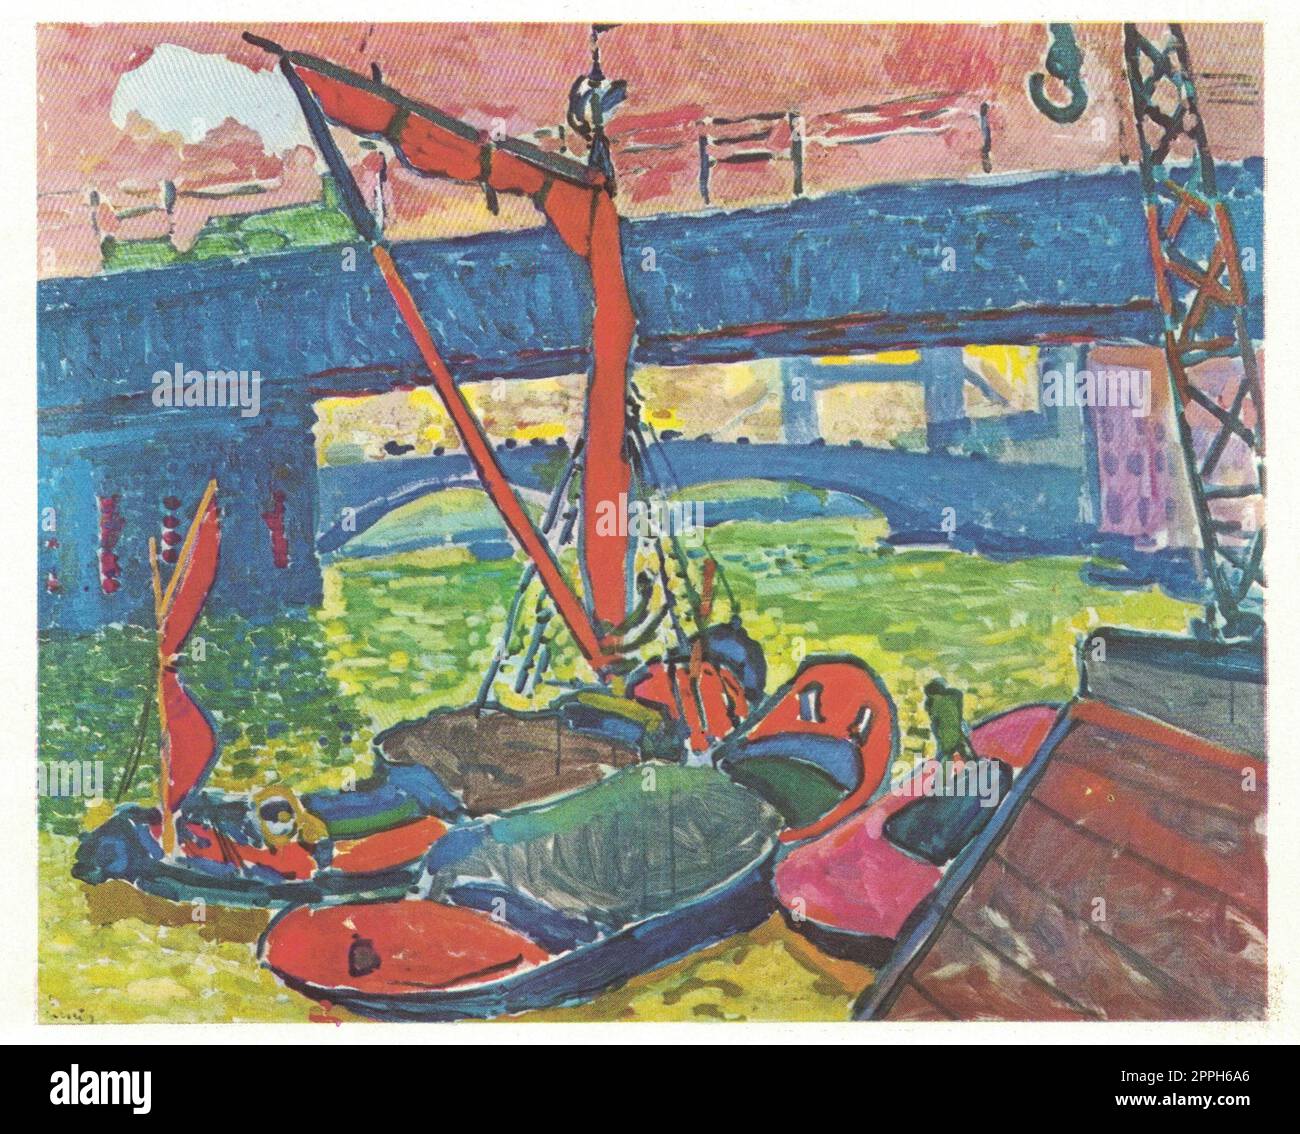 Unter Der Londons Bridge, 1906. Gemälde von Andre Derain. Andre Derain ist am besten bekannt für seine Beiträge zu den Entwicklungen von Fauvismus und Kubismus, zwei Avantgarde-Bewegungen vom Anfang des 20. Jahrhunderts. Derain wurde am 17. Juni 1880 in Chatou geboren Stockfoto